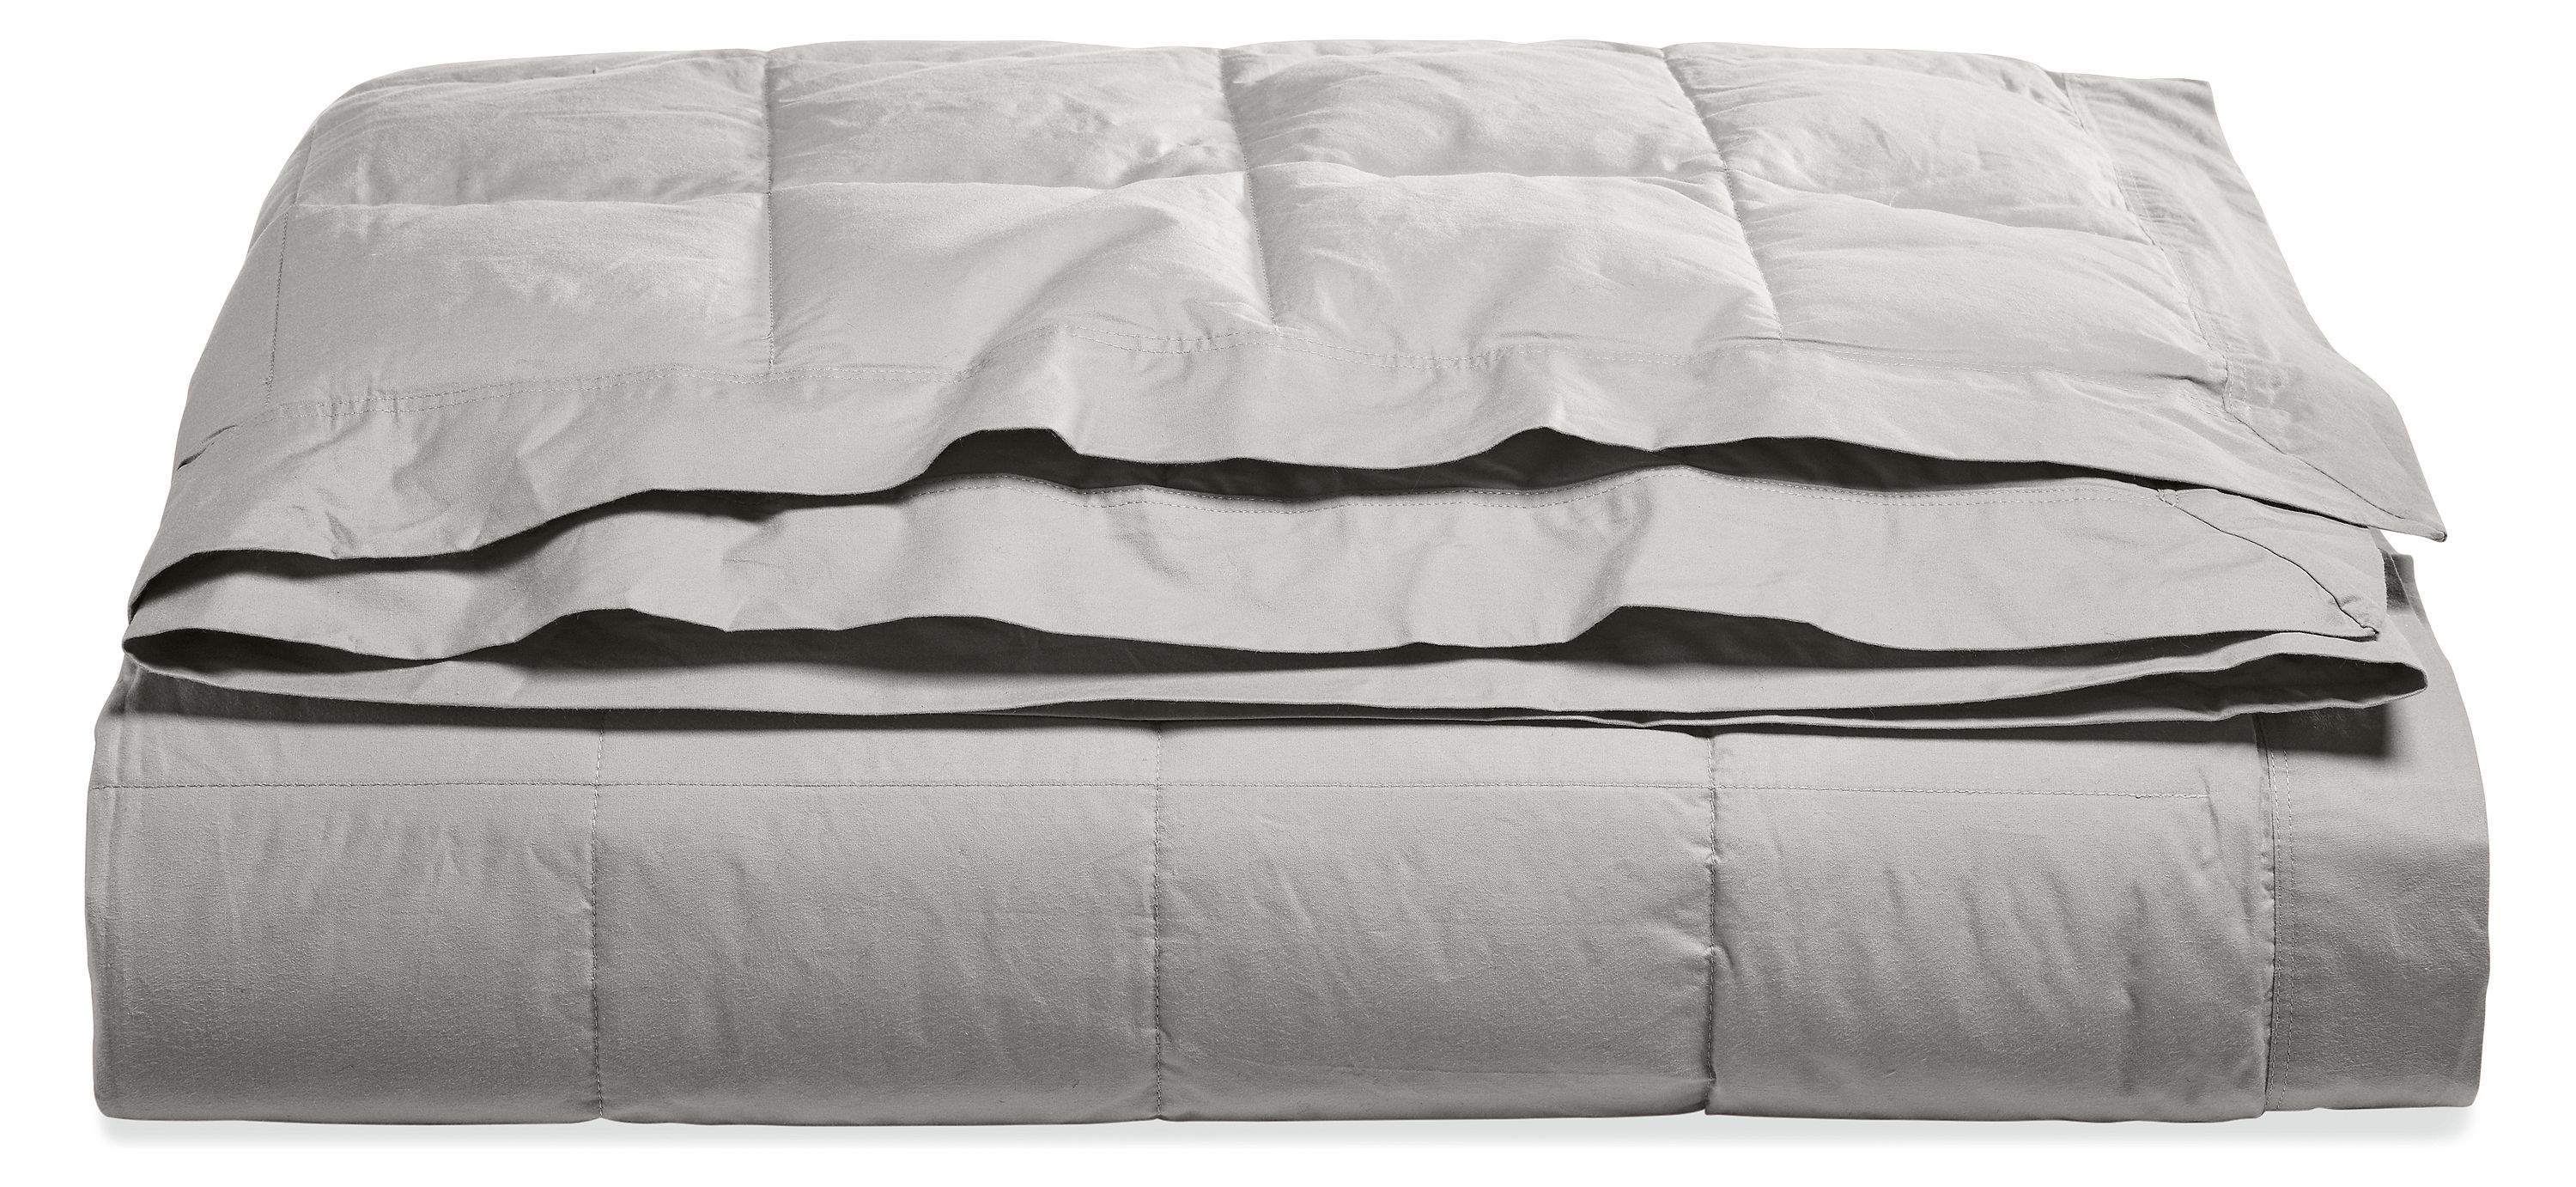 Surrey Down Blanket In Grey Modern Bedding Modern Home Decor